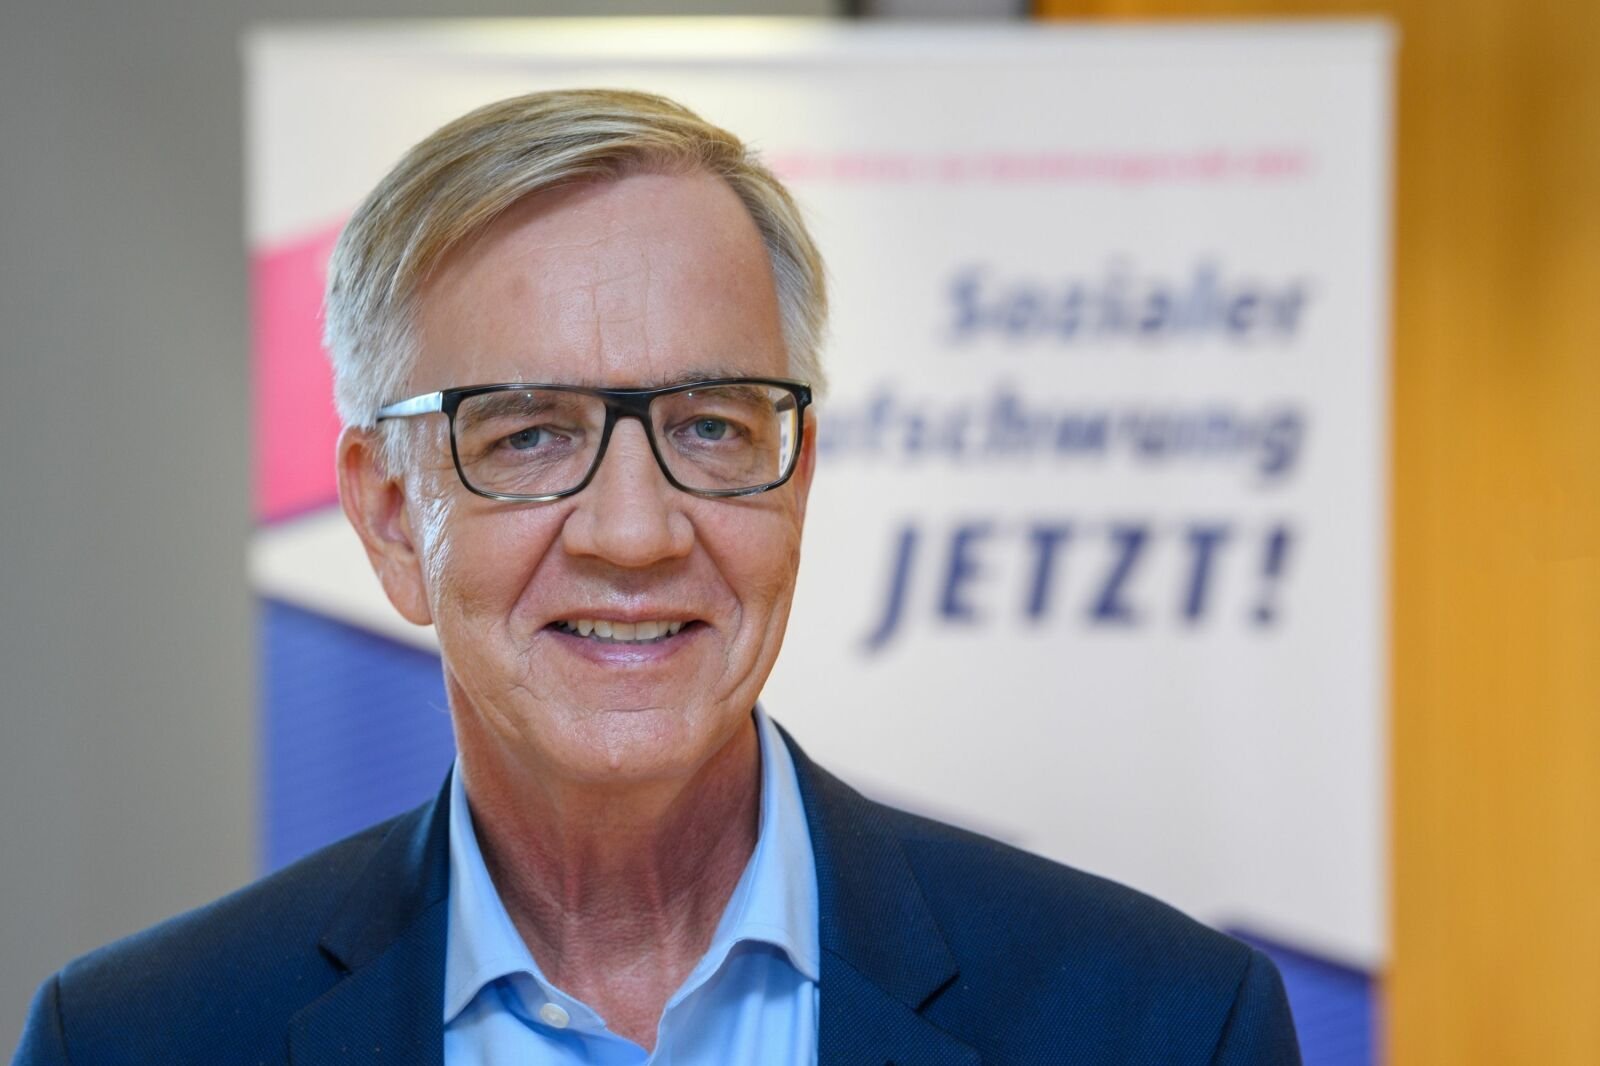 Das Portraitfoto zeigt Dietmar Bartsch vor dem Hintergrund der VdK-Kampagne "Sozialer Aufschwung jetzt!"